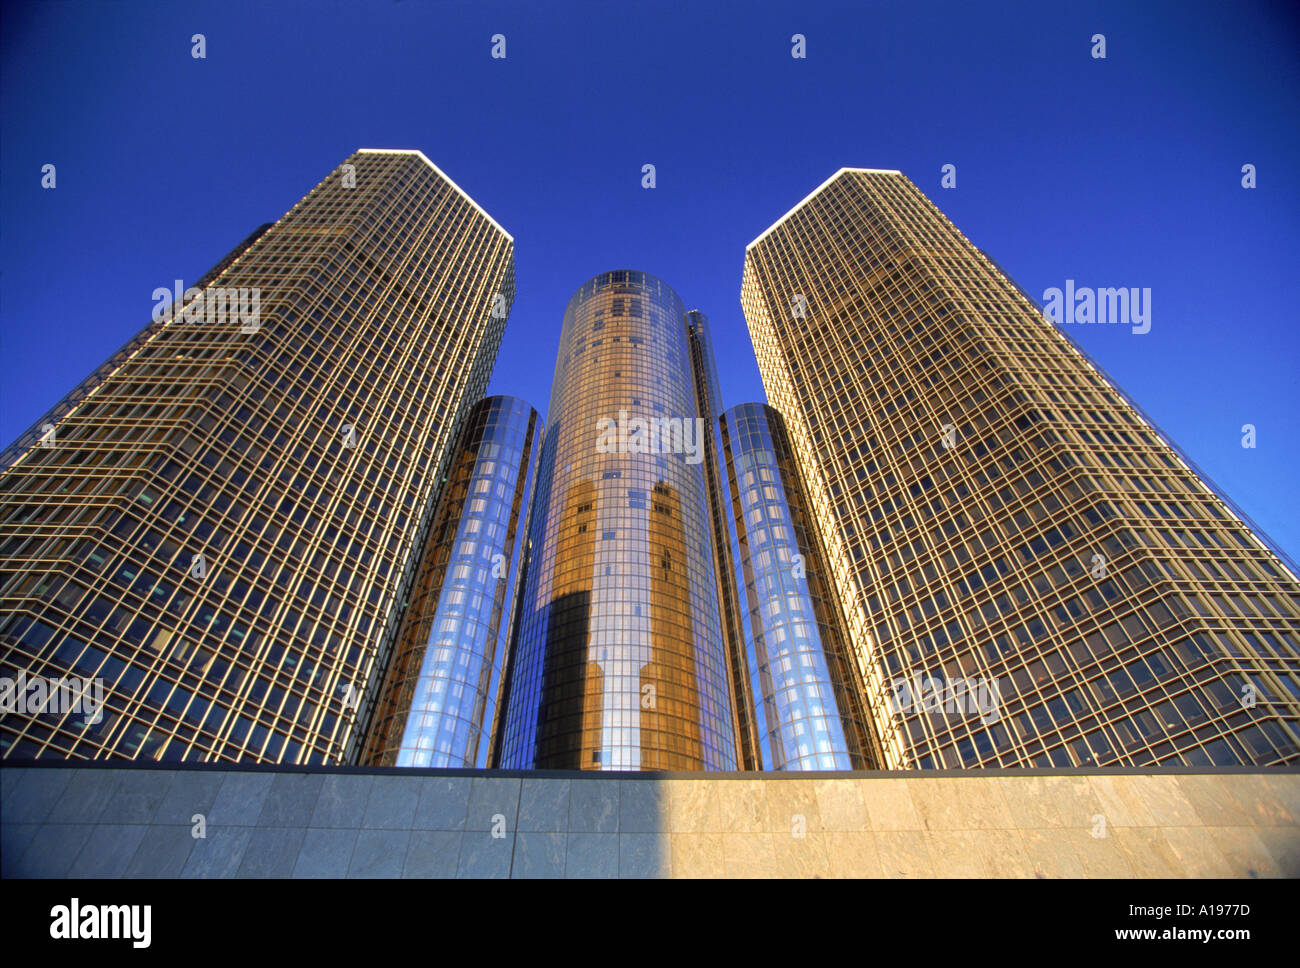 Das Westin Hotel mit 73 Stockwerken Amerika Apos s höchste Hotel Renaissance Center-Stadtbüro und Einzelhandel komplexe Detroit Stockfoto